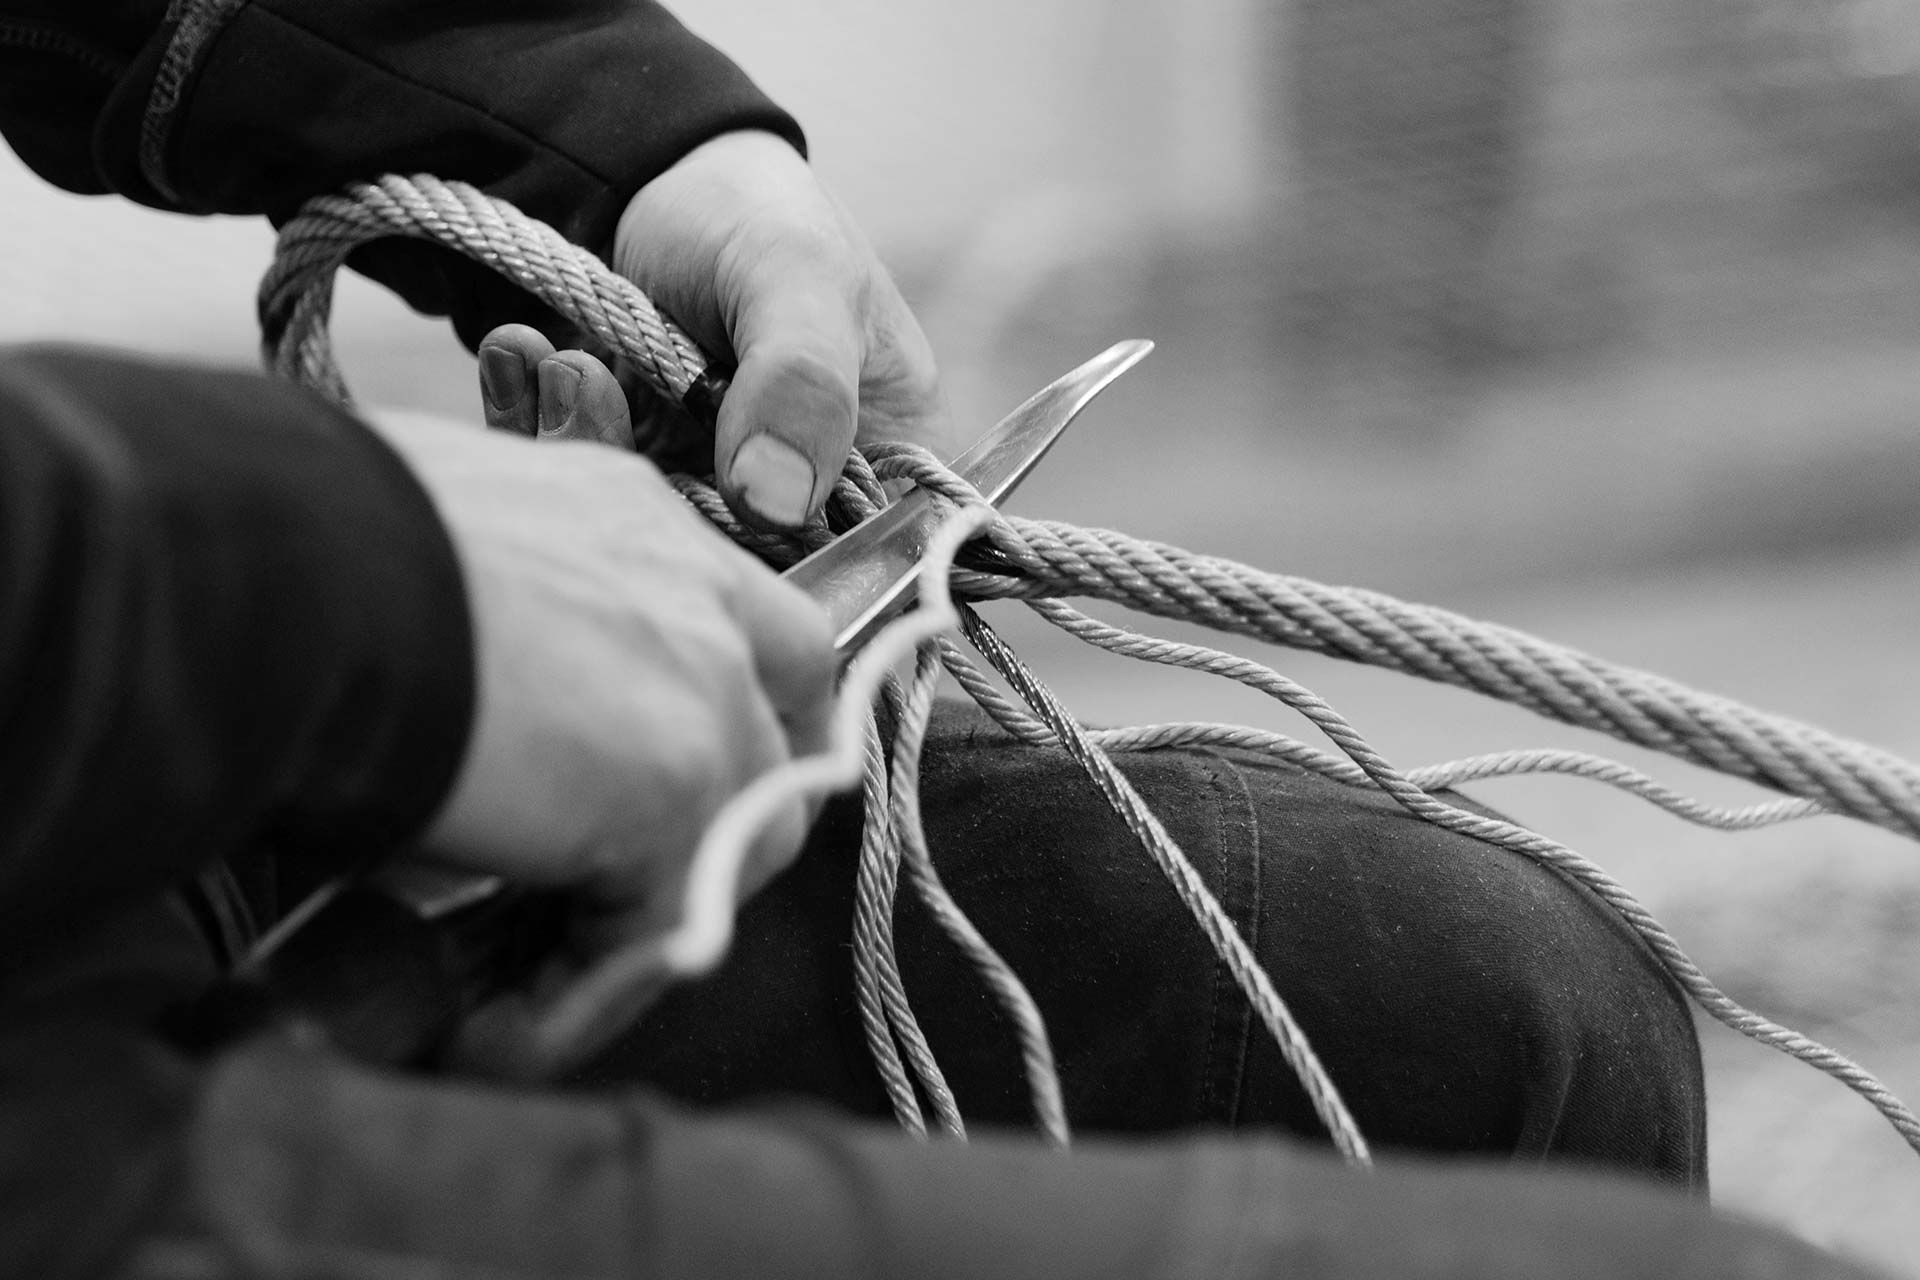 Splitsning av wire är ett hantverk som kräver hårda nypor.